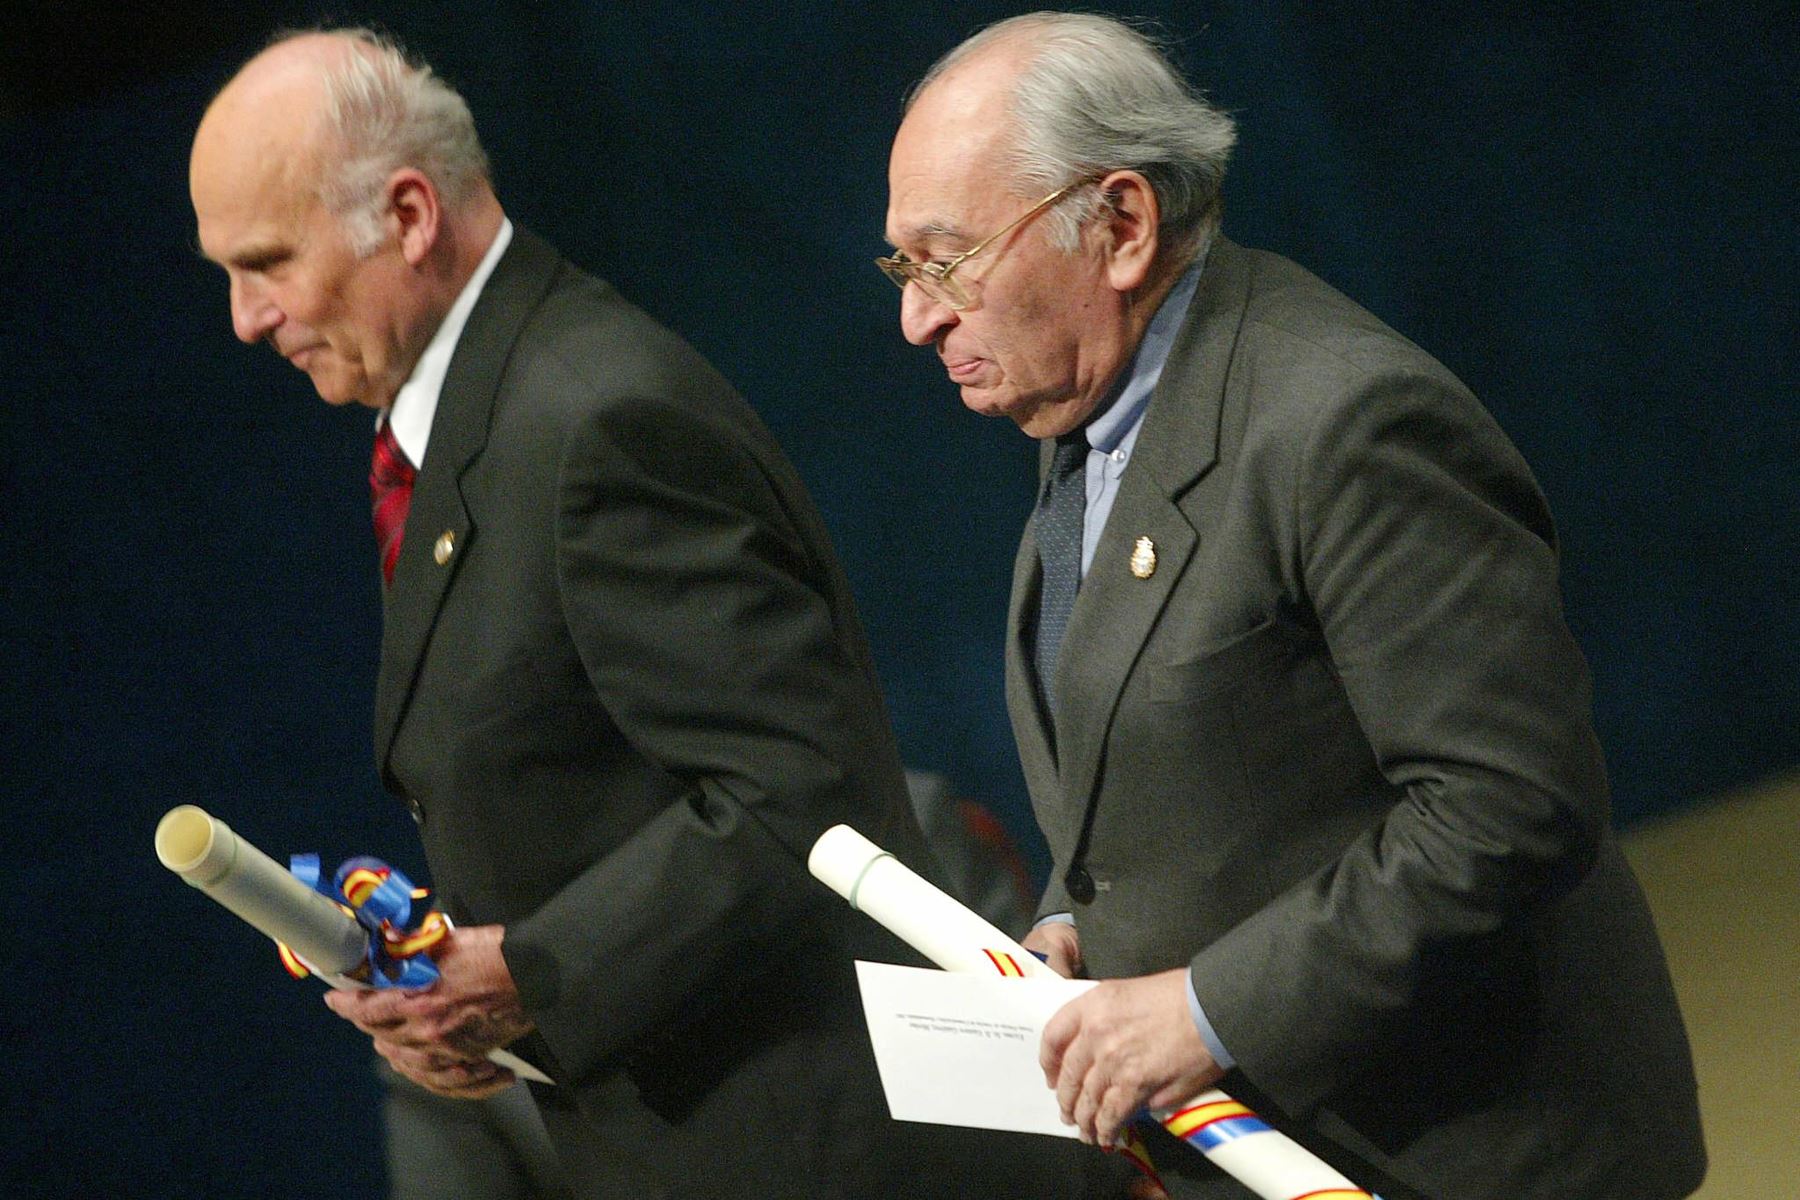 El periodista polaco Ryszard Kapuscinski  y el teólogo peruano Gustavo Gutiérrez Merino regresan después de recibir el Premio Príncipe de Asturias de Comunicaciones y Humanidades 2003 en Oviedo, norte de España, el 24 de octubre de 2003.
Foto: AFP